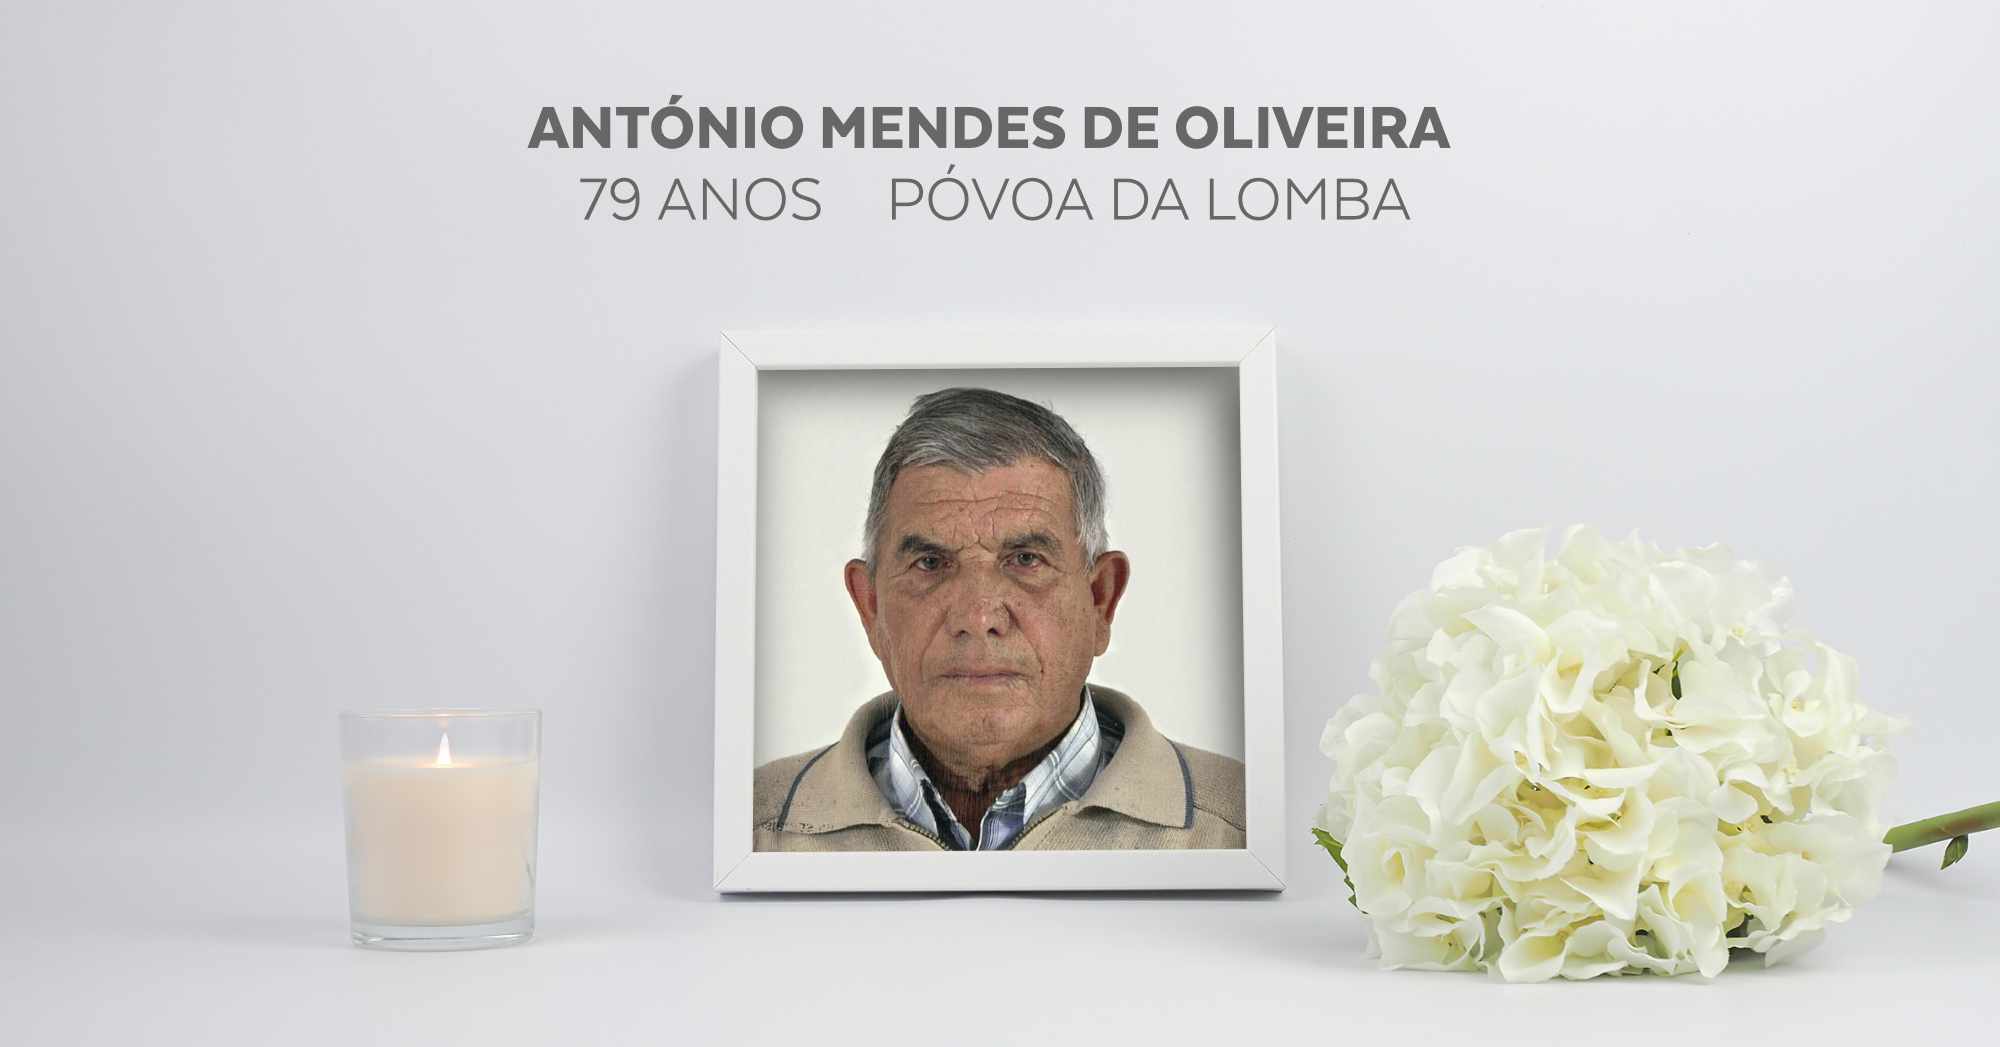 António Mendes de Oliveira